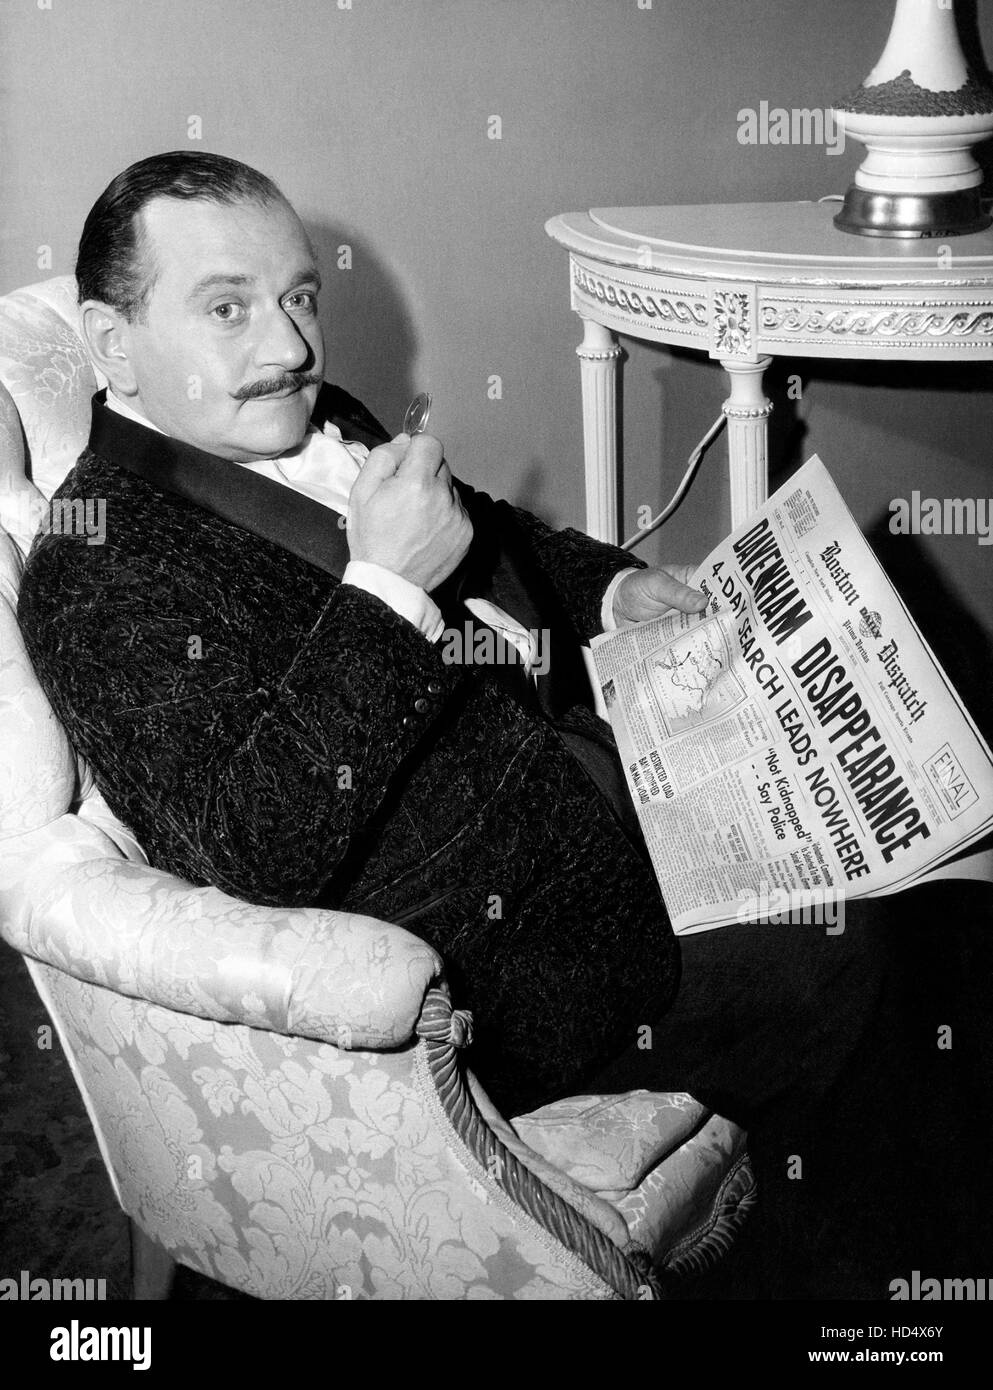 GENERAL ELECTRIC THEATRE, Martin Gabel, ('Hercule Poirot,' saison 10,  épisode 27, diffusé le 1er avril 1962), 1953-62 Photo Stock - Alamy